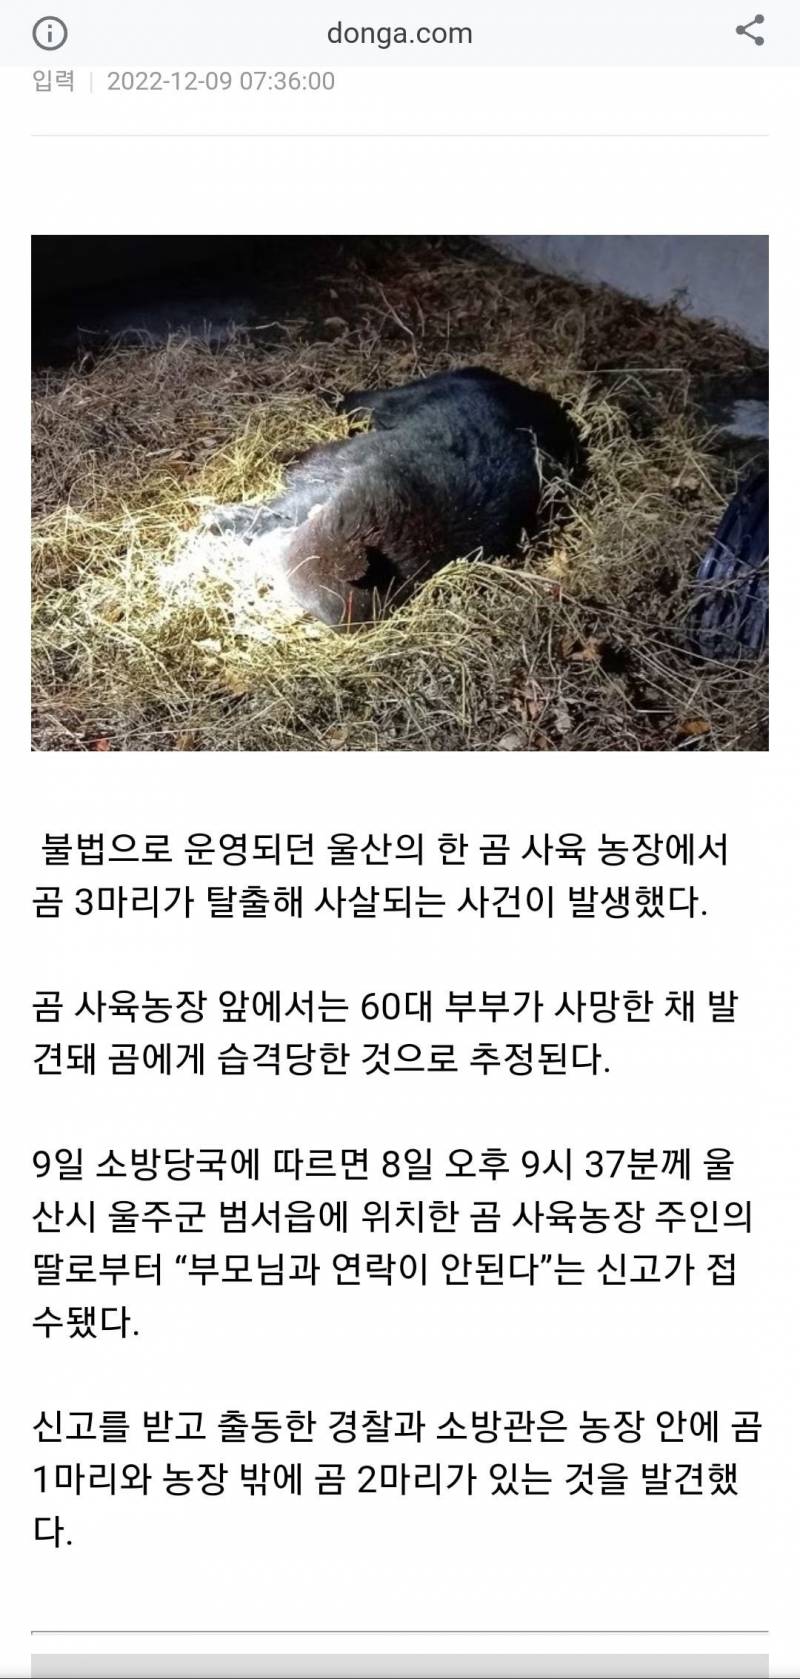 울산 곰 탈출사건, 멸종위기종인 반달가슴곰 불법사육농장으로 밝혀져(혐오주의) | 인스티즈